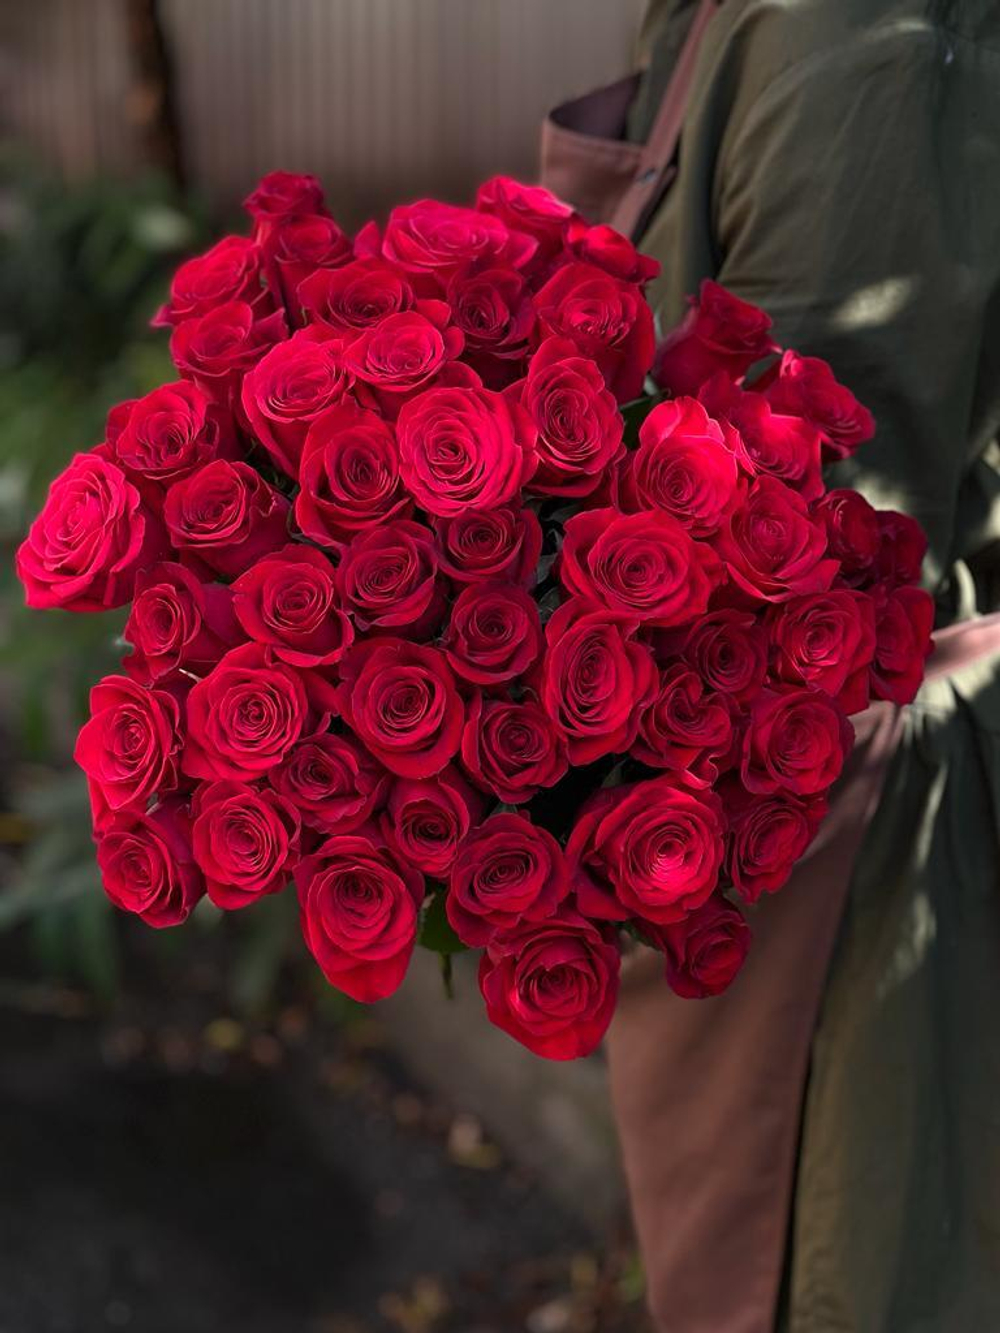 Букет из 51 красной розы премиум сорта